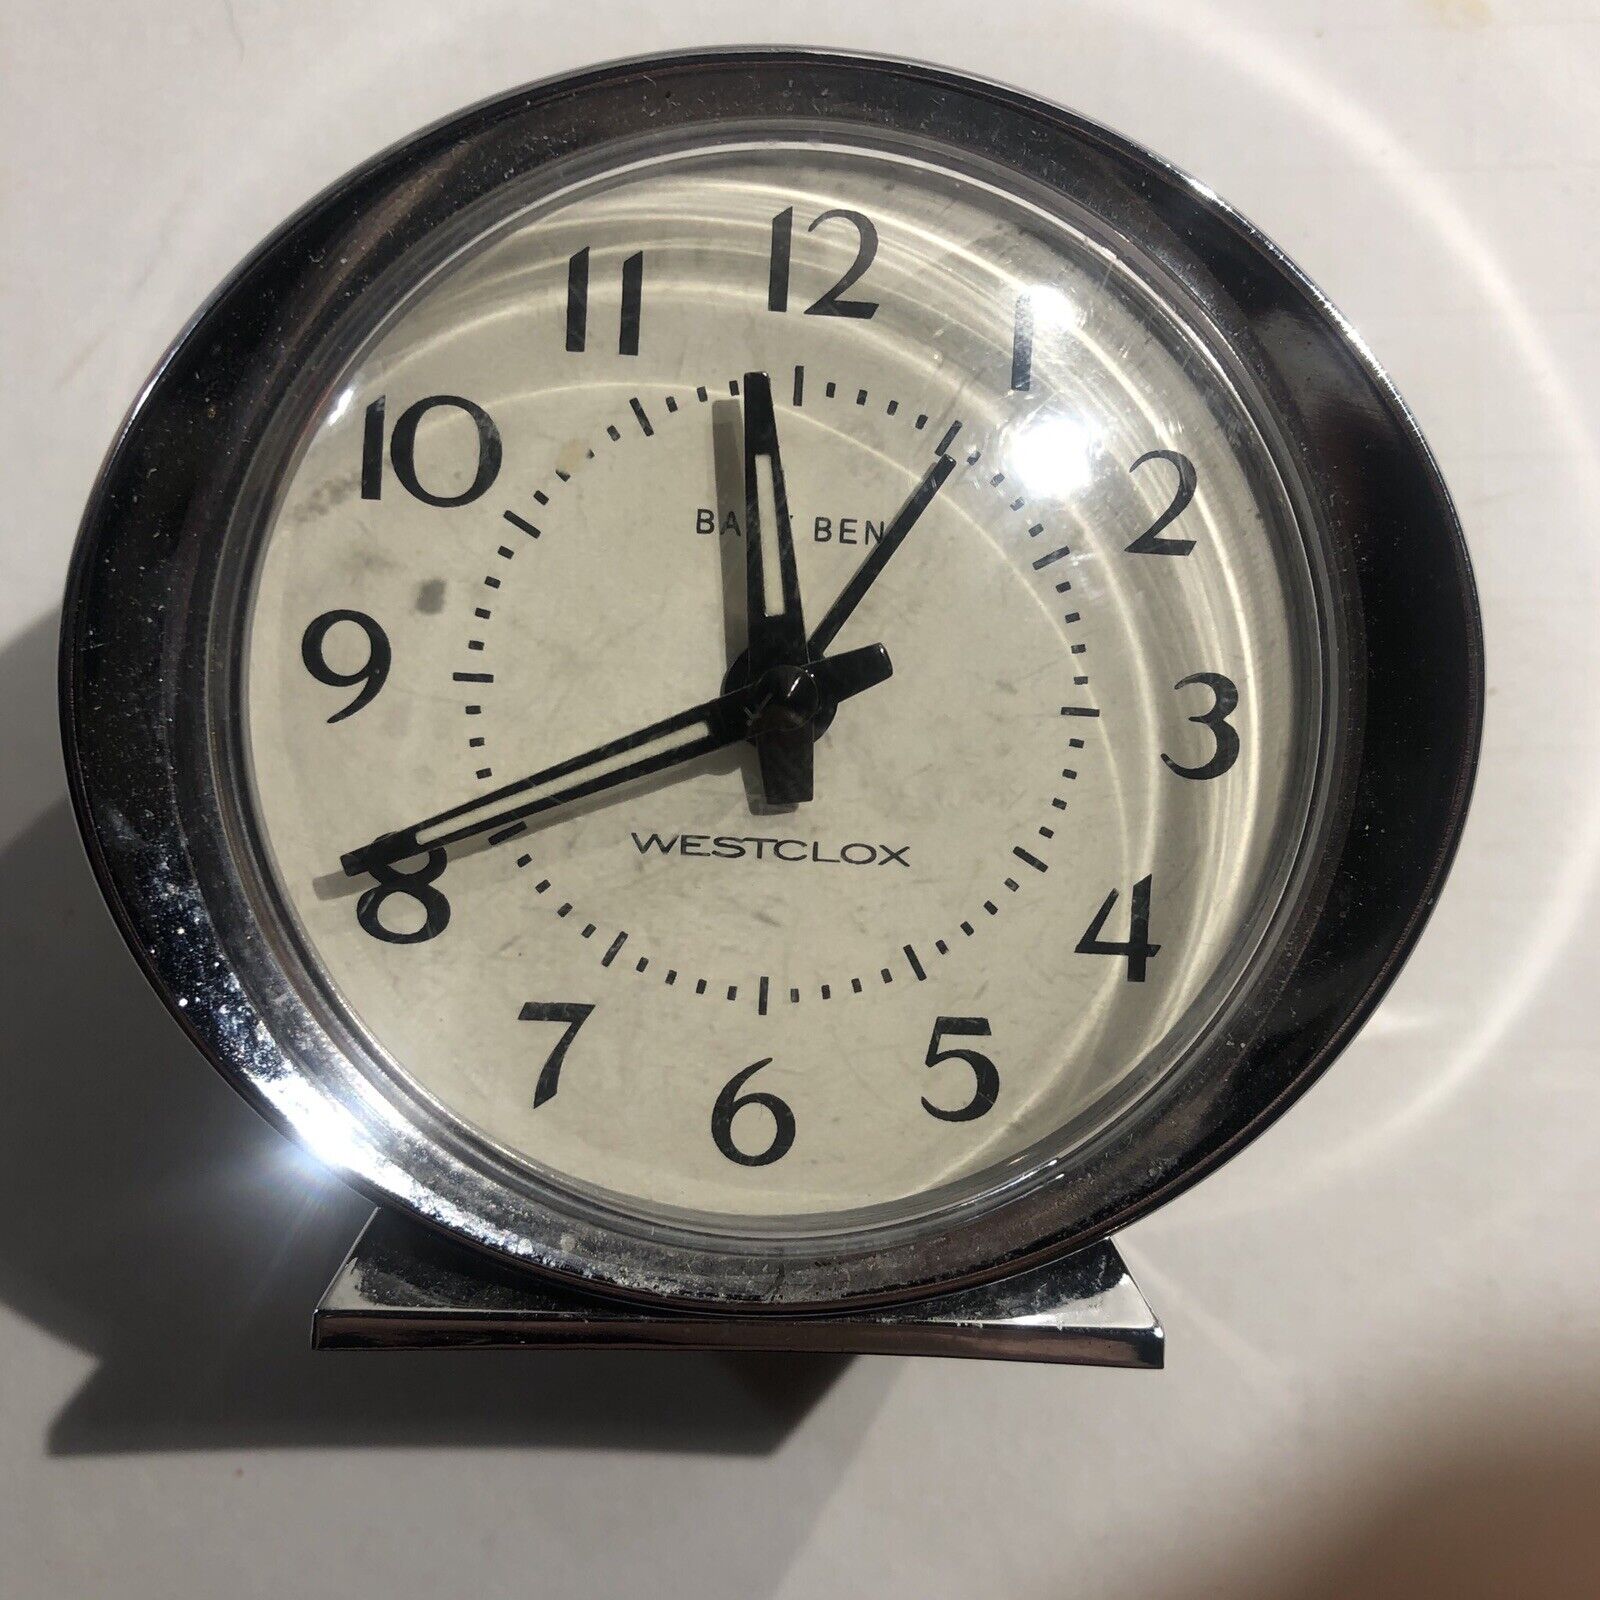 Vintage Classic Westclox Big Ben Wind Up Alarm Clock (working)